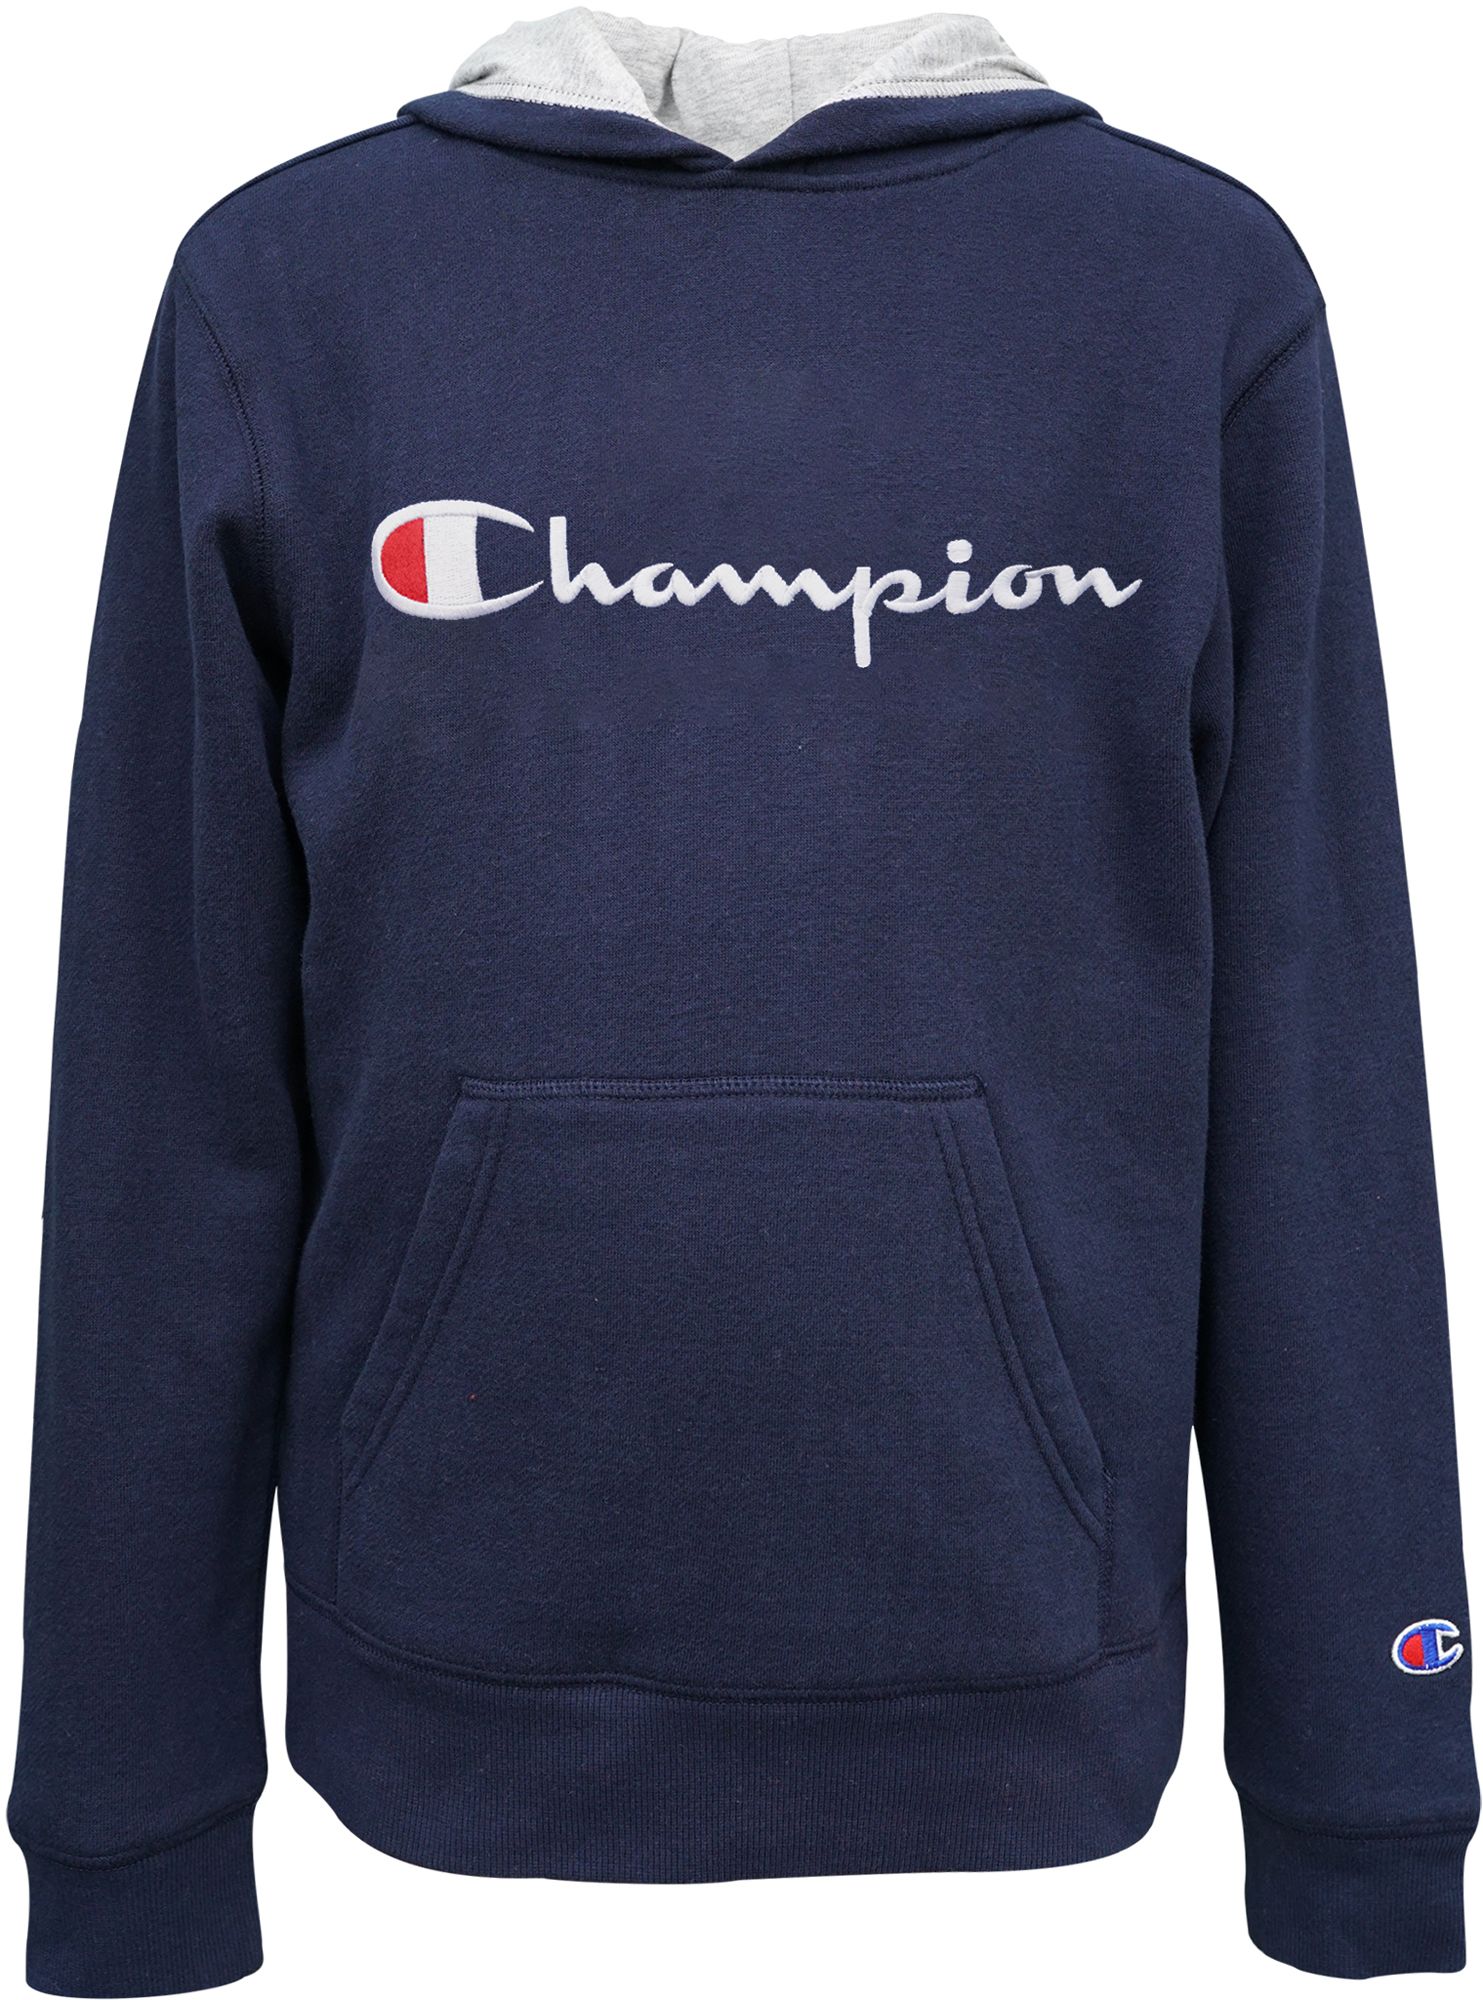 champion hoodies on sale